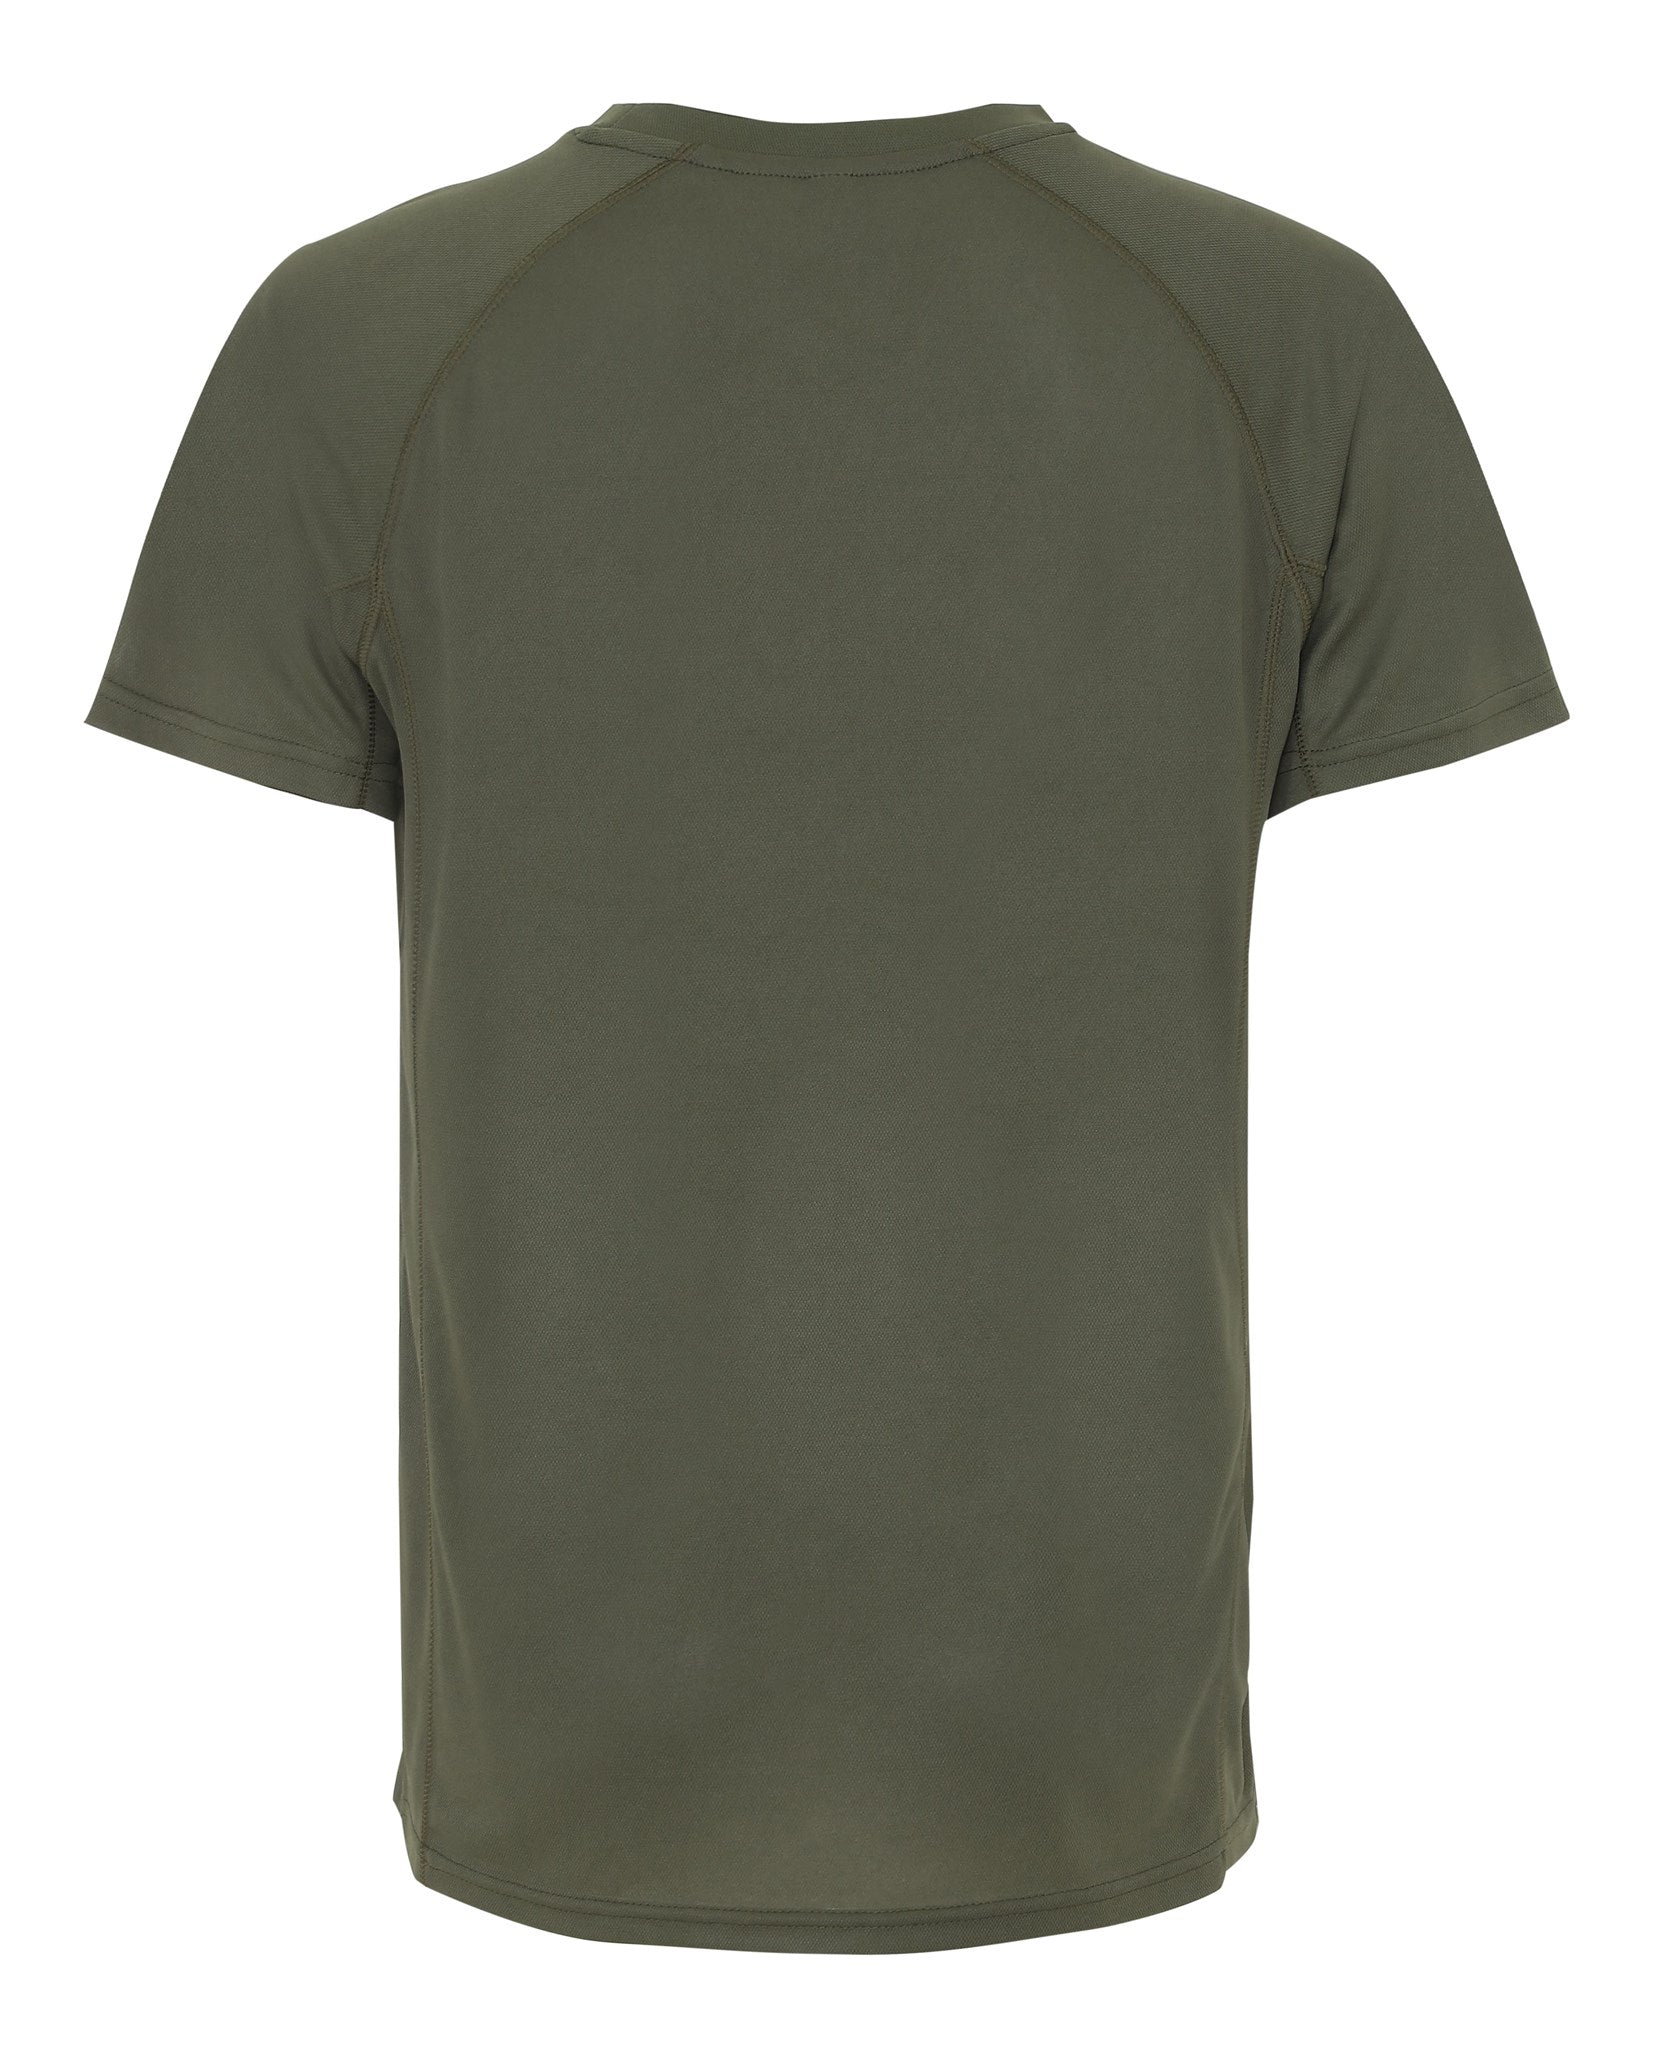 Trænings T-shirt - Army Grøn - TeeShoppen - Grøn 2